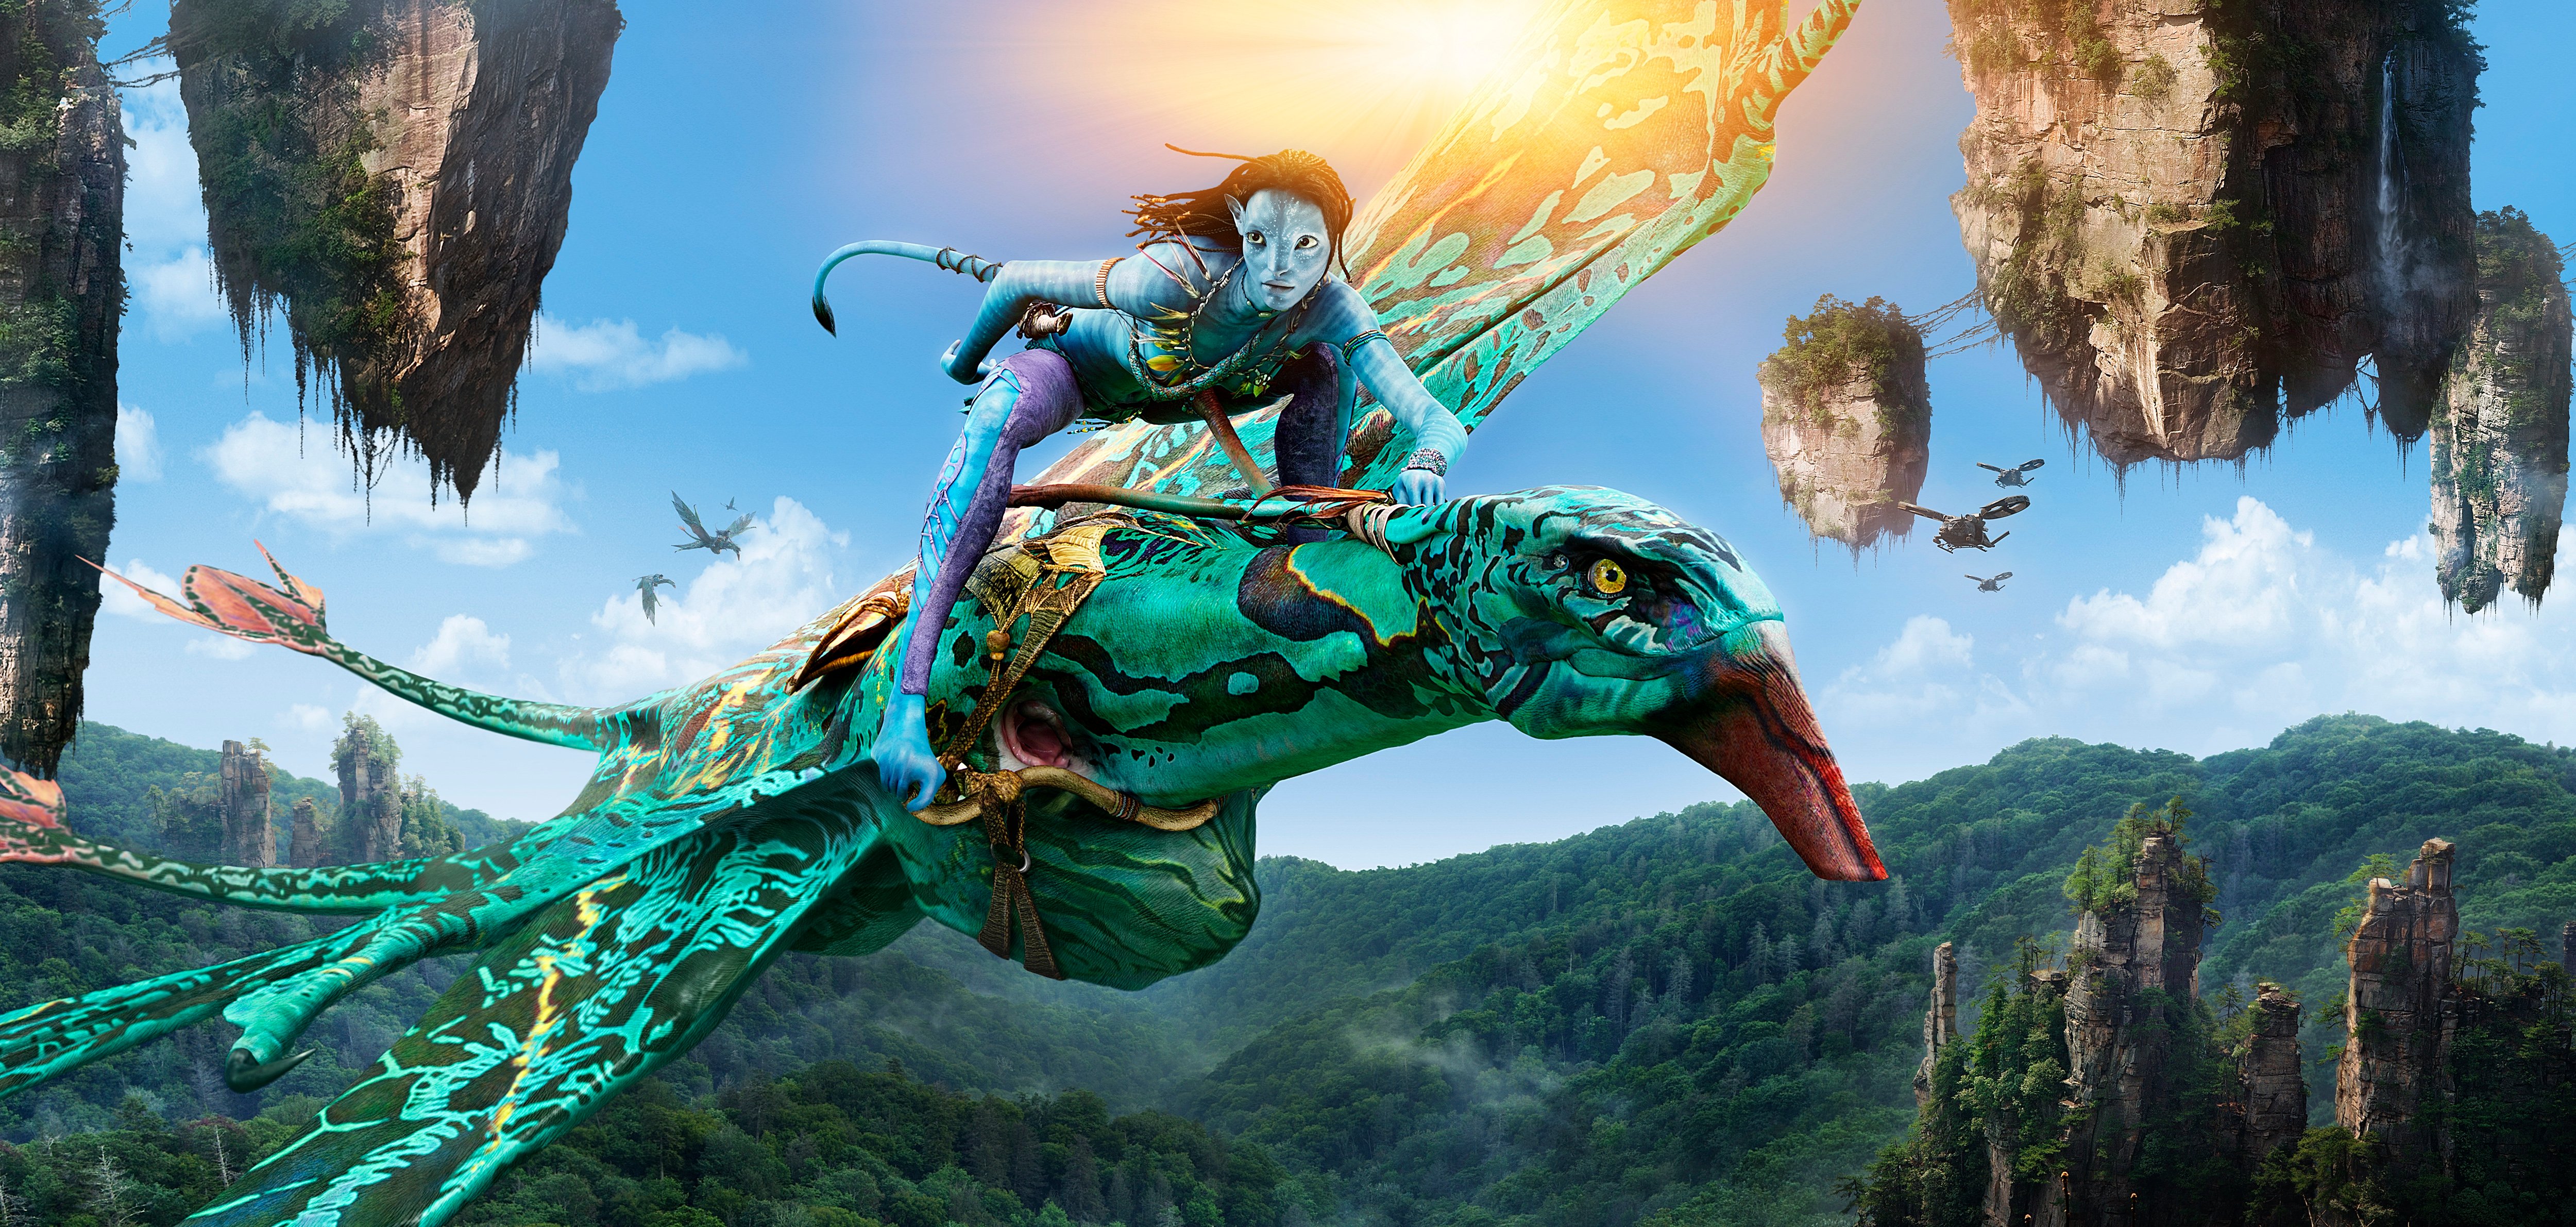 Avatar 2 The Way of Water  Kỳ quan kỹ xảo nghìn năm của điện ảnh thế giới   VFXAnimation